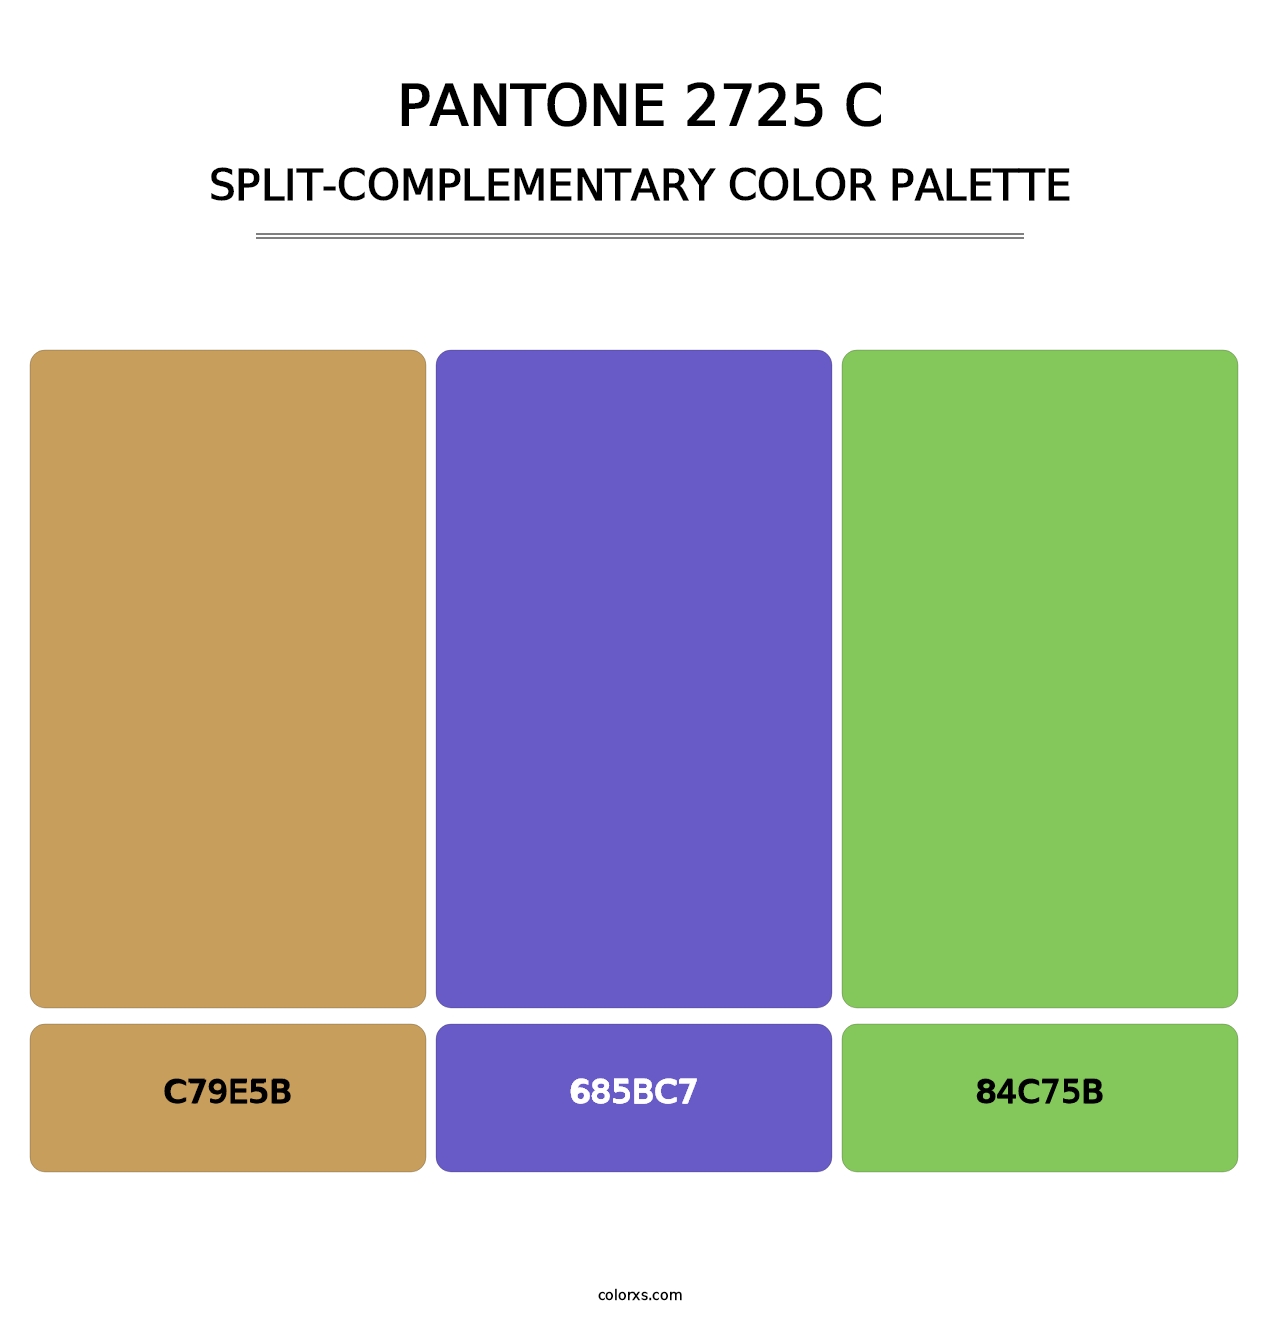 PANTONE 2725 C - Split-Complementary Color Palette